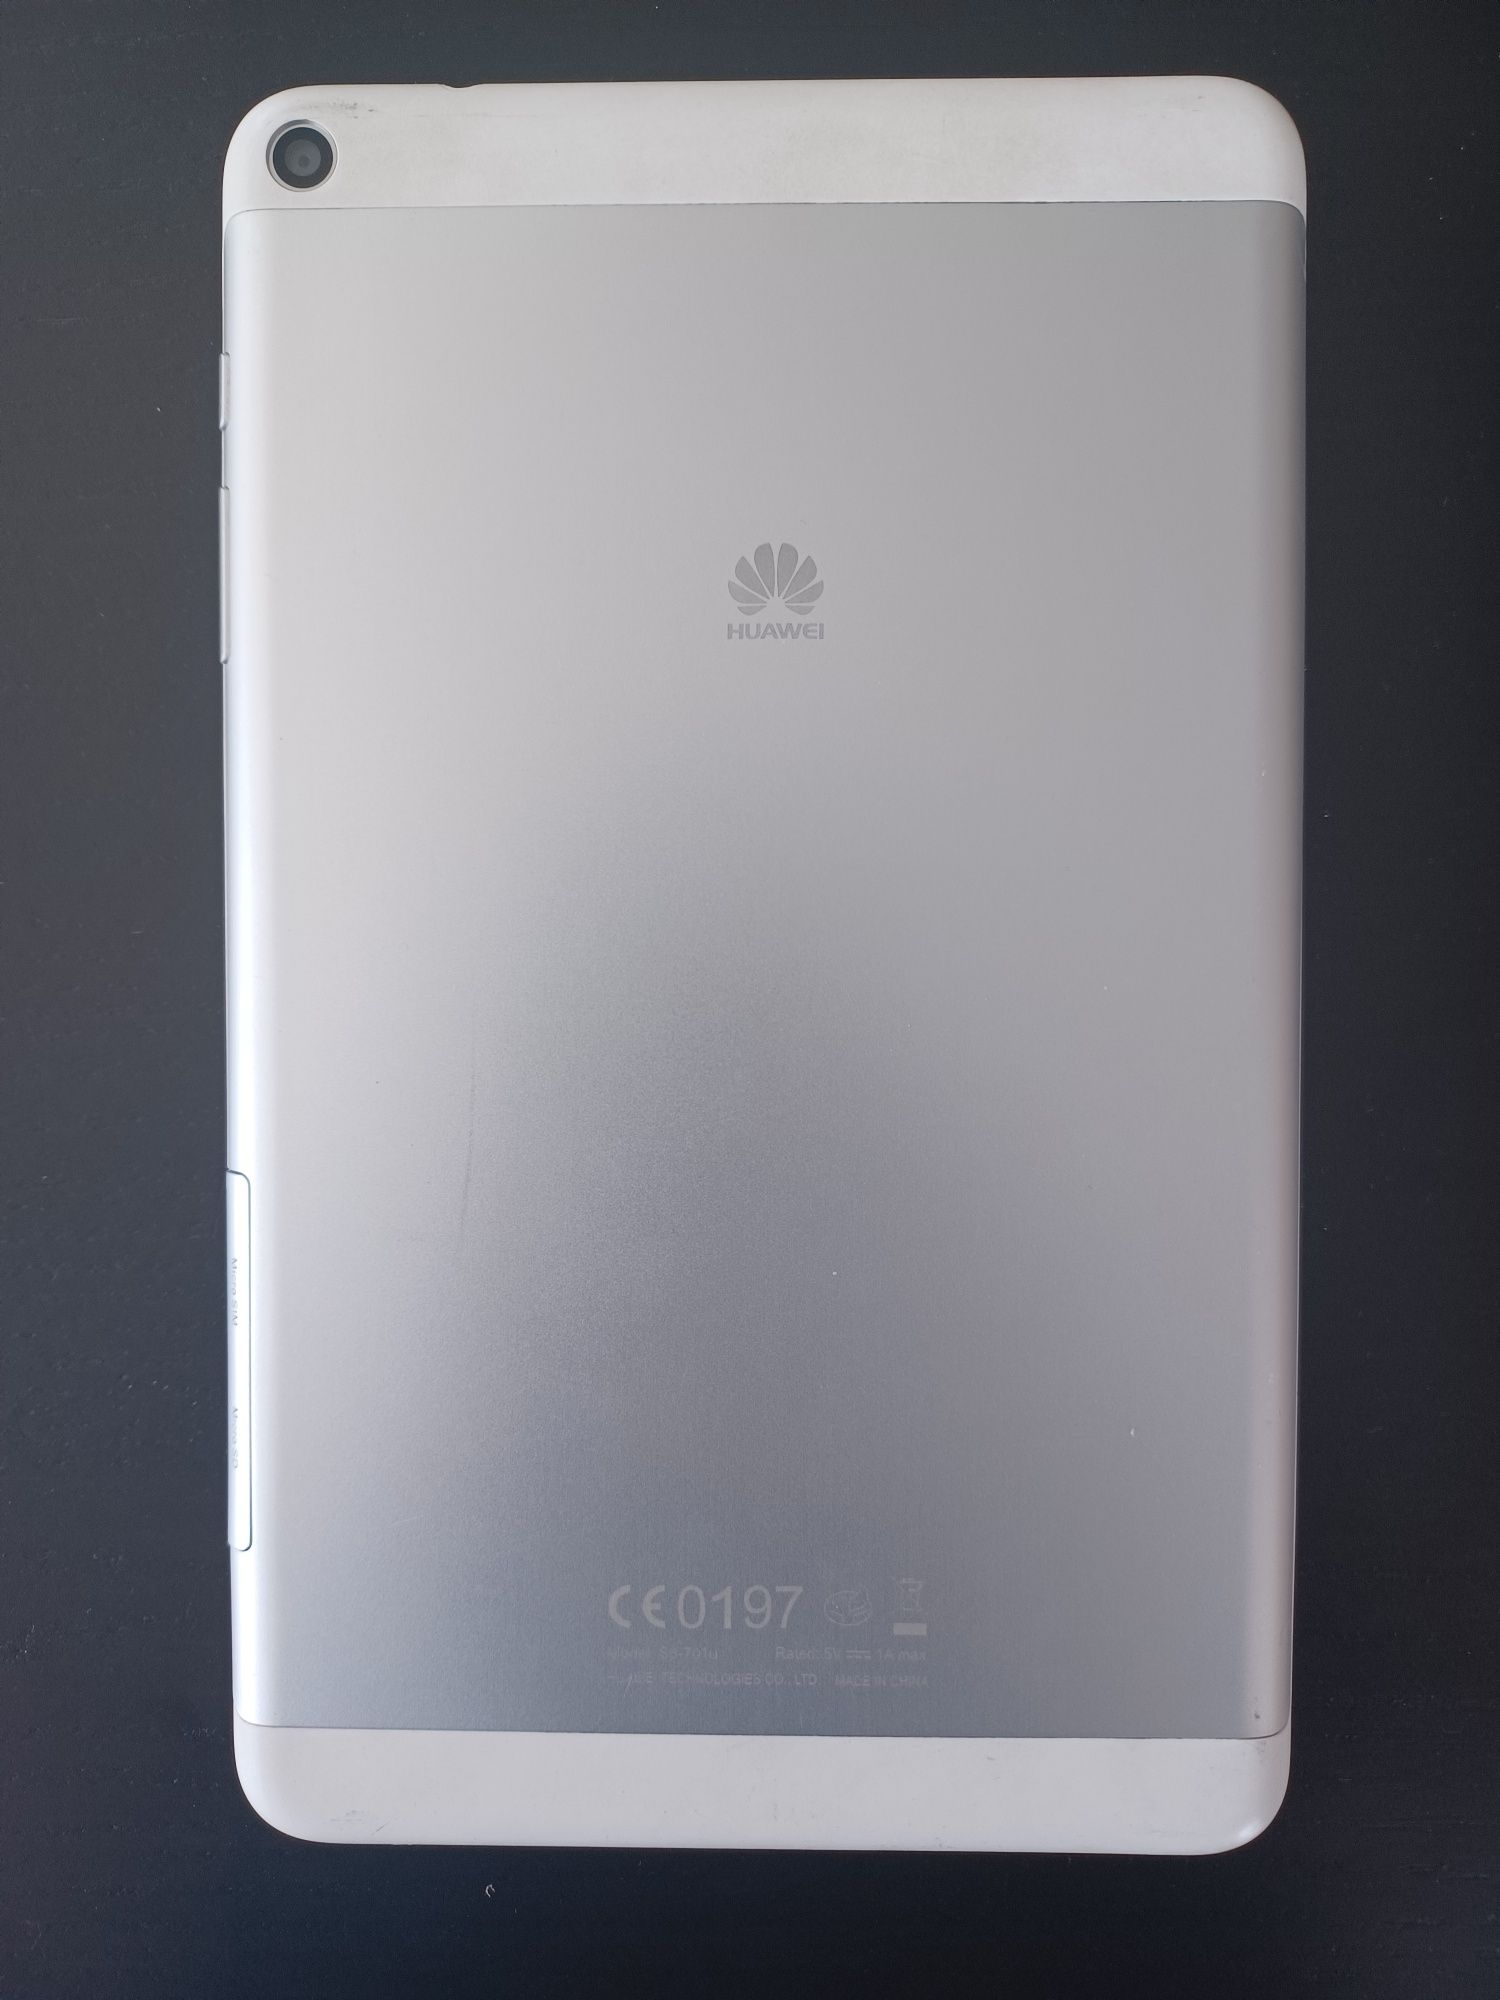 Huawei MediaTab T1 8.0